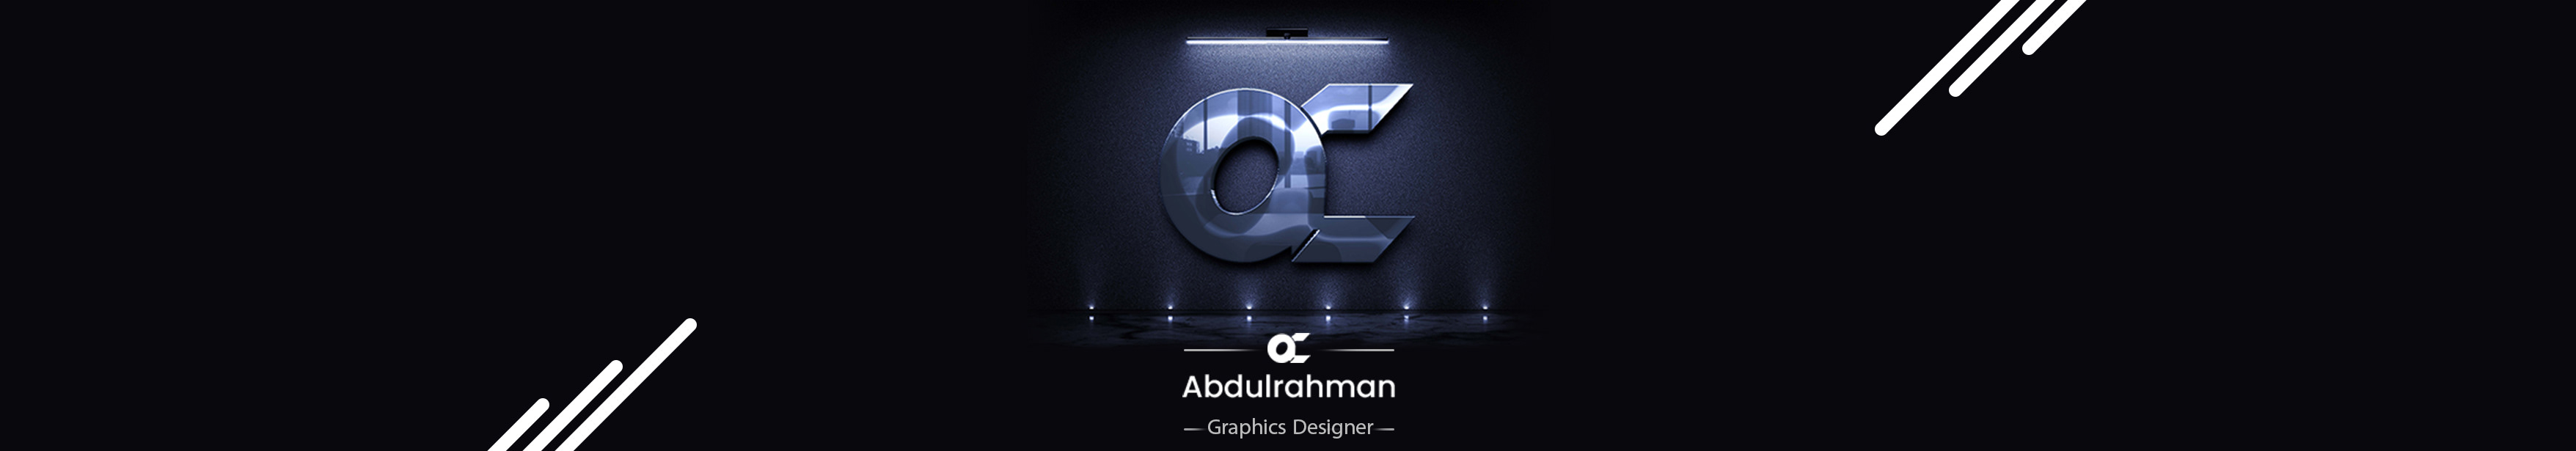 Abdulrahman Aljarfi's profile banner